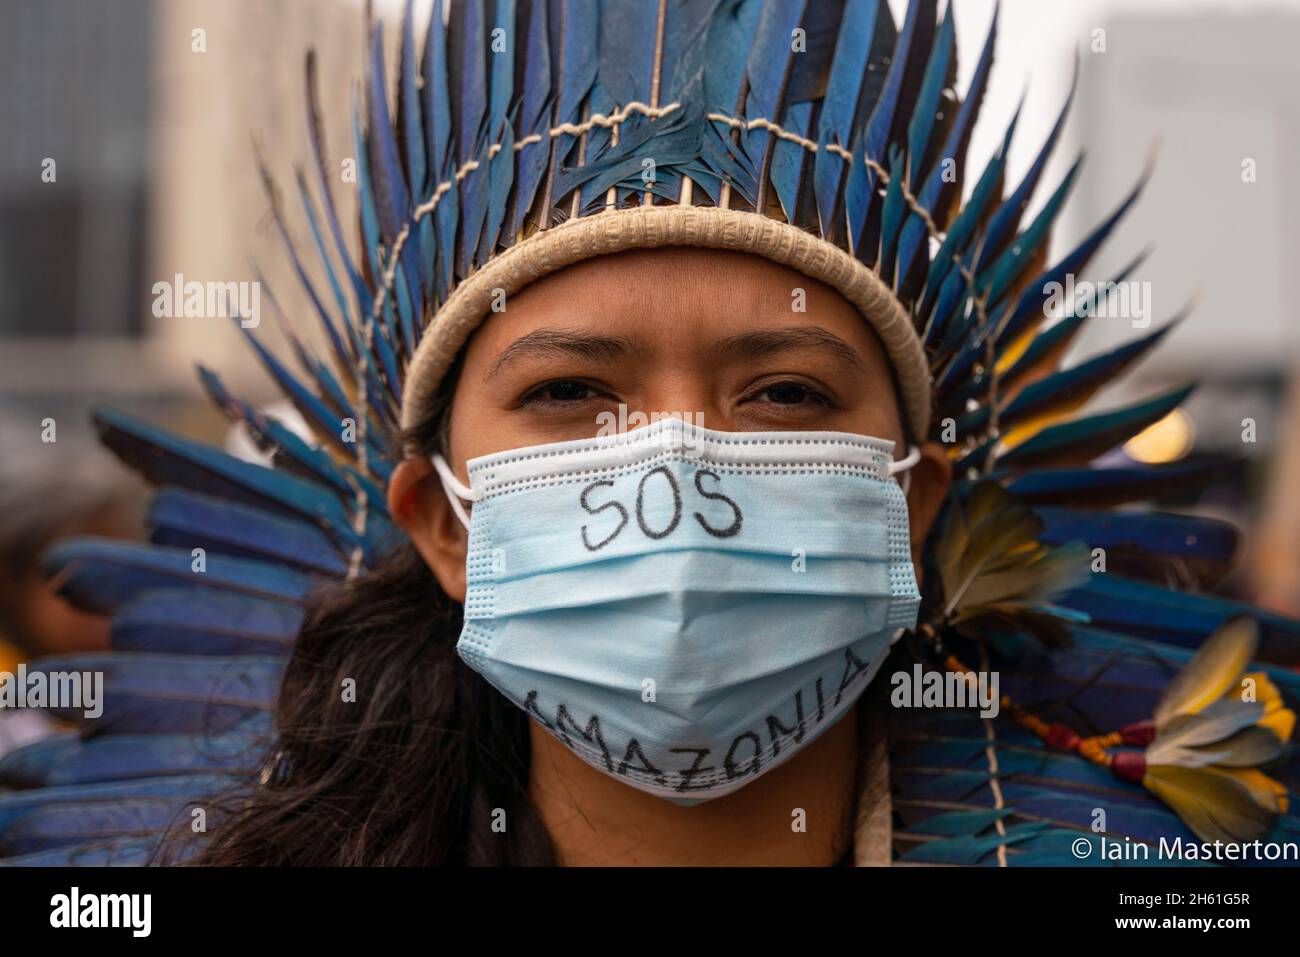 Glasgow, Schottland, Großbritannien. November 2021. Tag dreizehn und letzter Tag des UN-Klimagipfels COP26 in Glasgow. Eine indigene Frau steht vor dem Eingang zur COP26 mit einer SOS Amazonia-Botschaft auf der Gesichtsmaske. Iain Masterton/Alamy Live News. Stockfoto